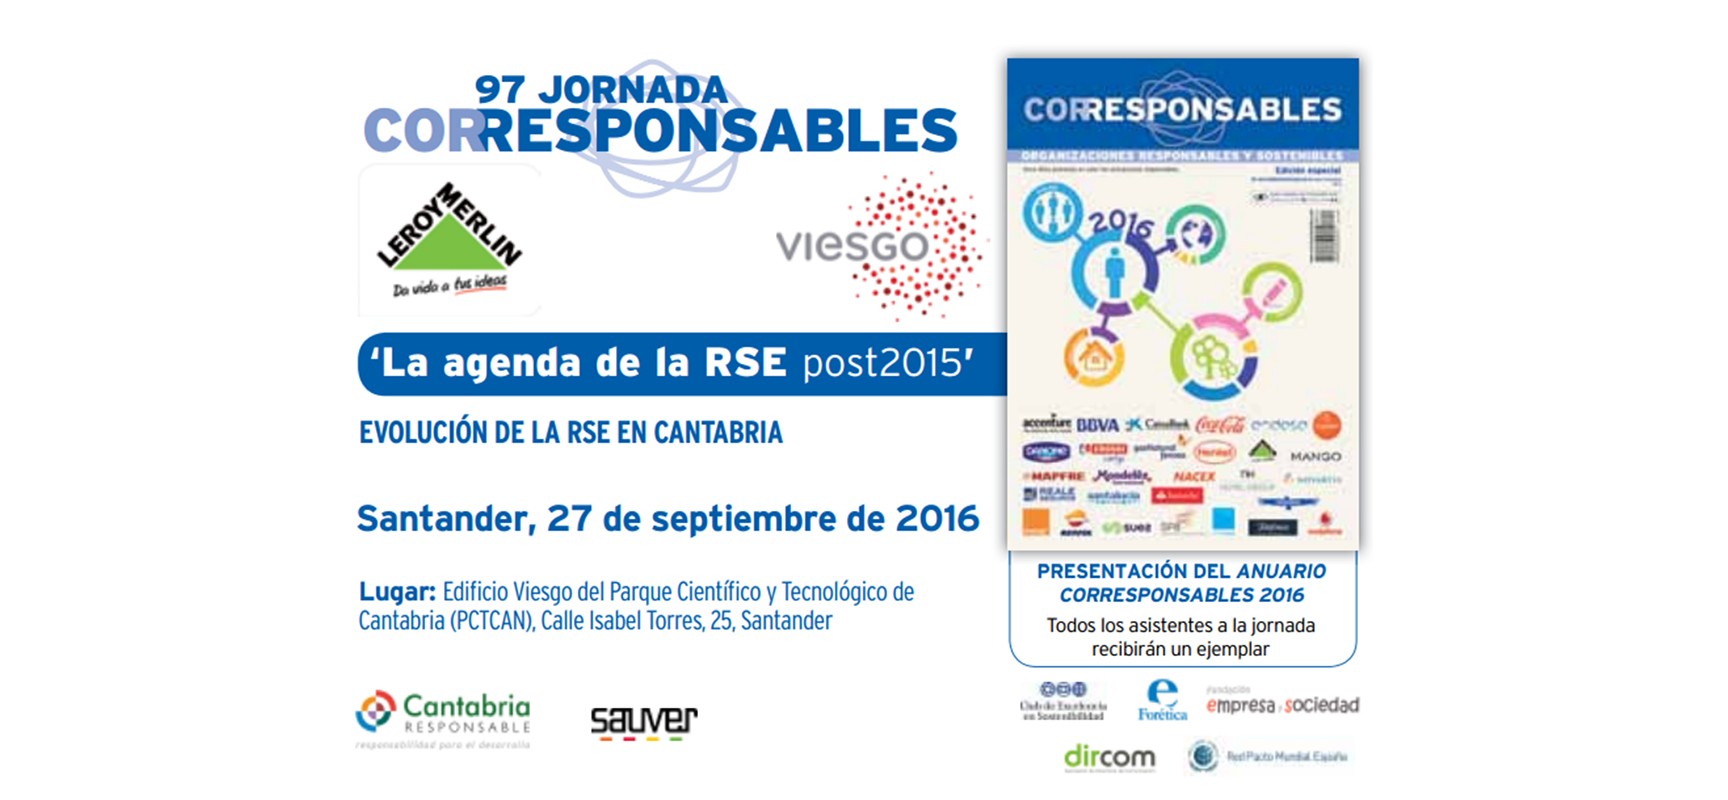 El 27 de septiembre tienes una cita con la RSE en Cantabria